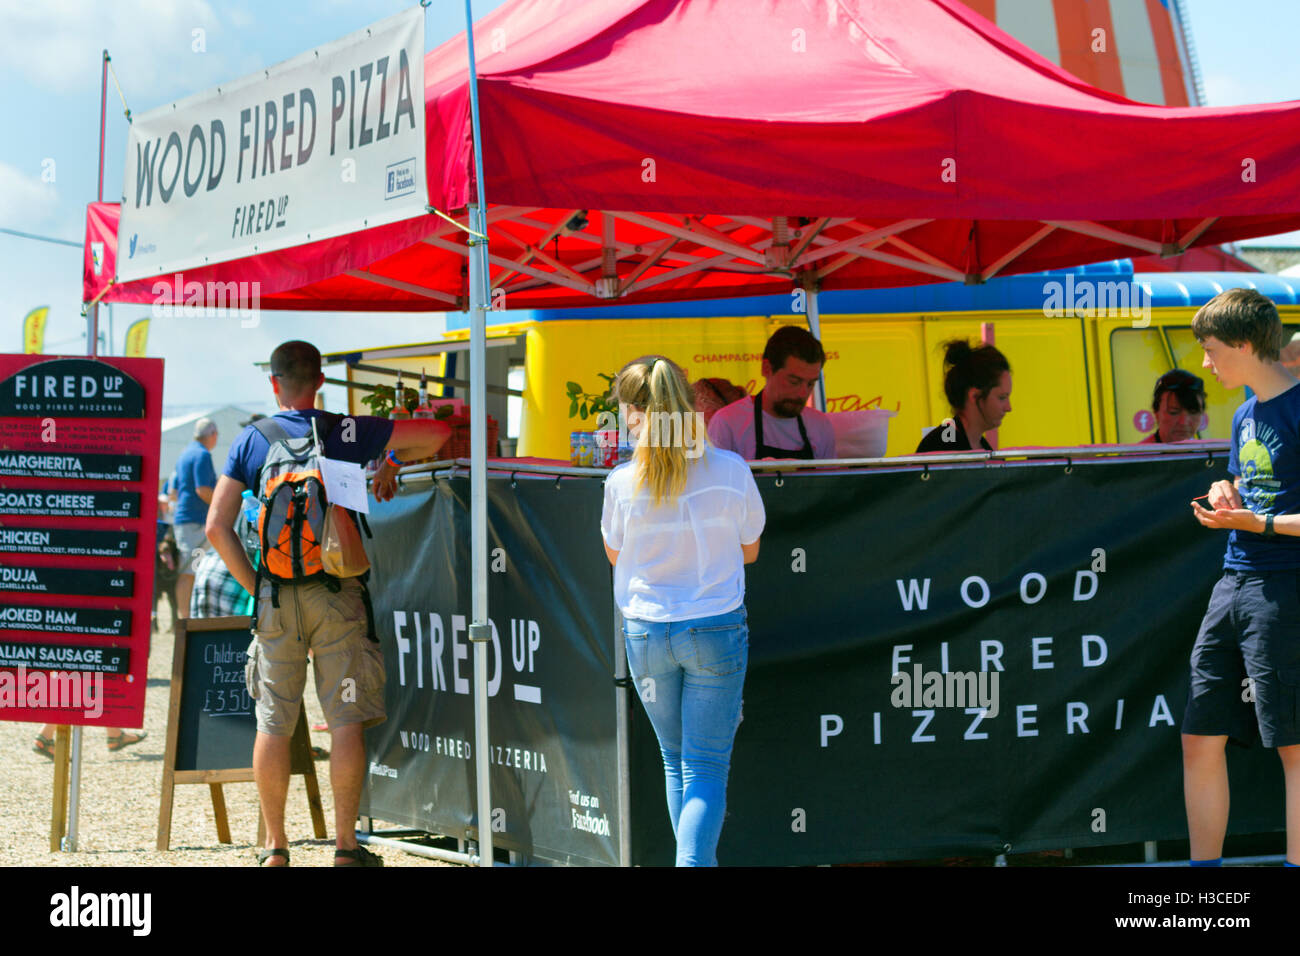 A legna per pizzeria stallo alimentare, festival musicale annuale, Jimmy's Farm, Ipswich, Suffolk, Regno Unito, 2016 Foto Stock